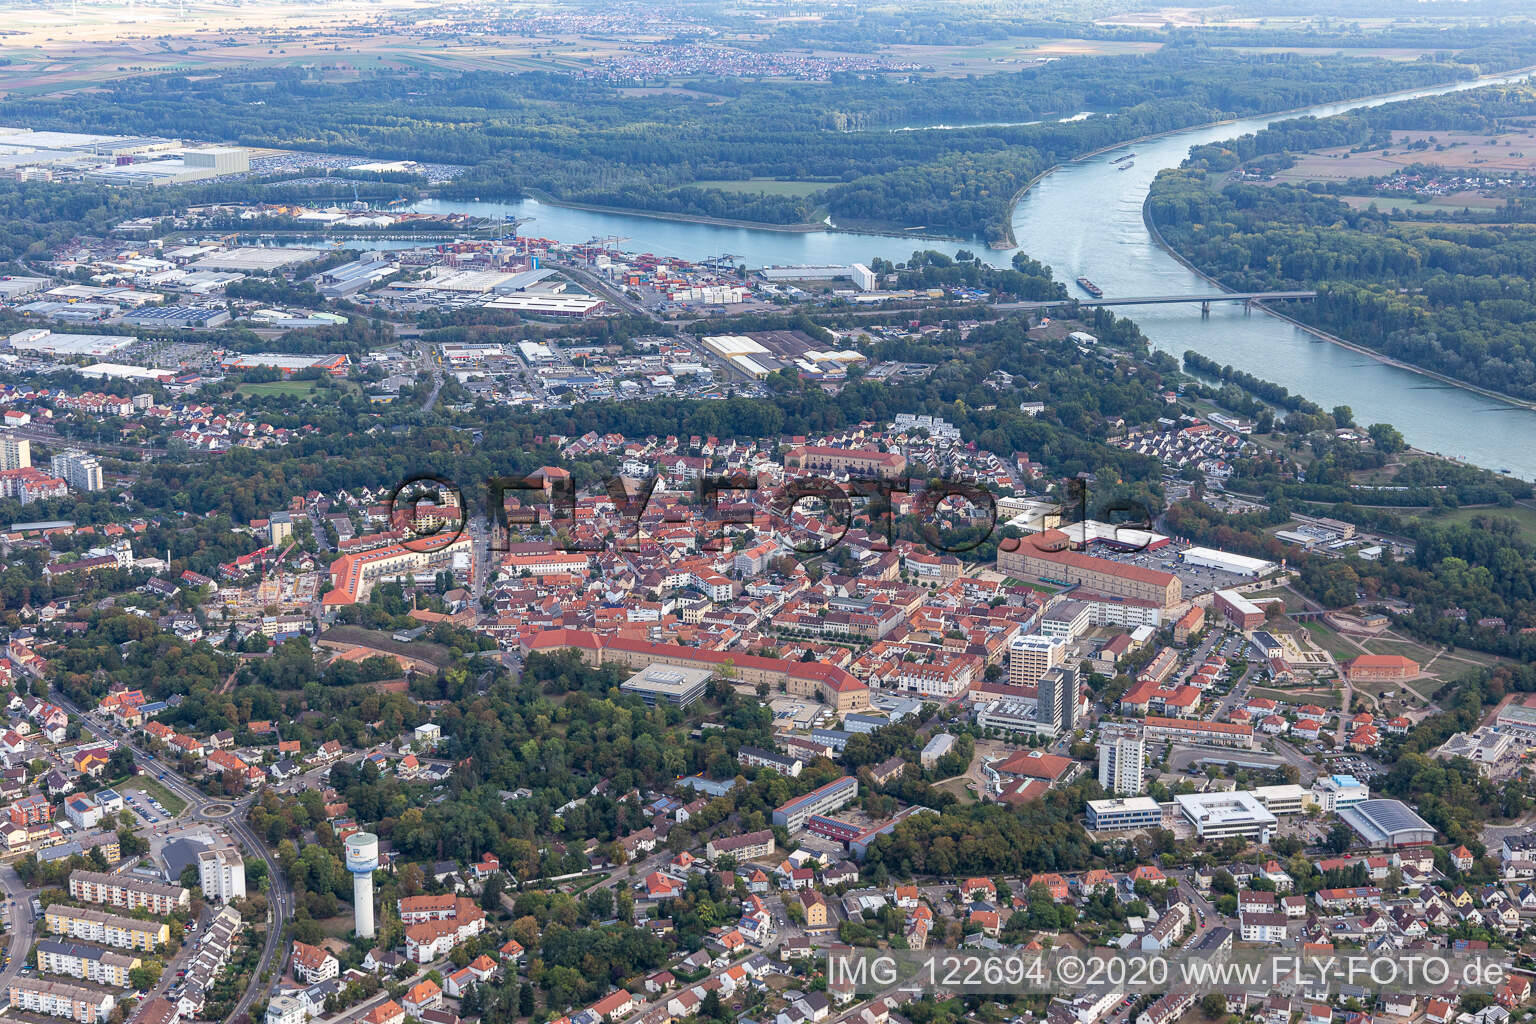 Germersheim dans le département Rhénanie-Palatinat, Allemagne vu d'un drone